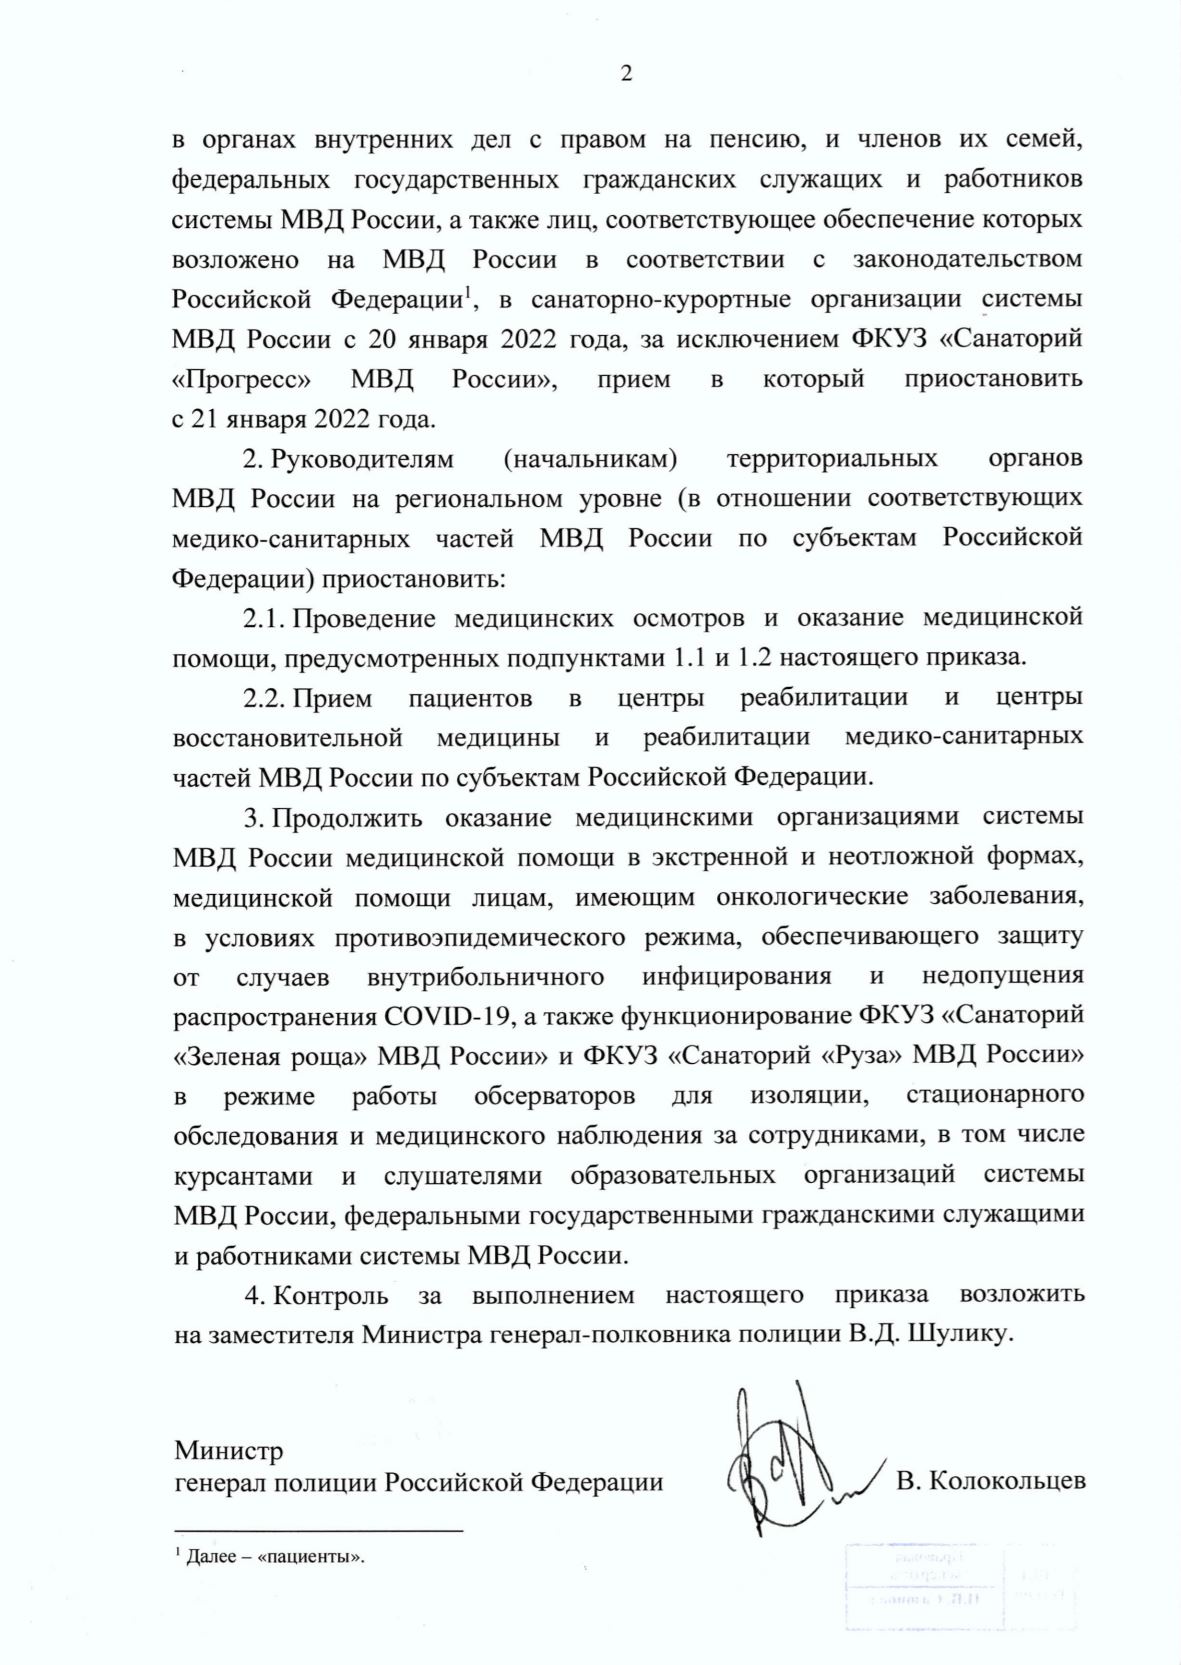 Приказ МВД России №64 от 20 января 2022 года лист 2